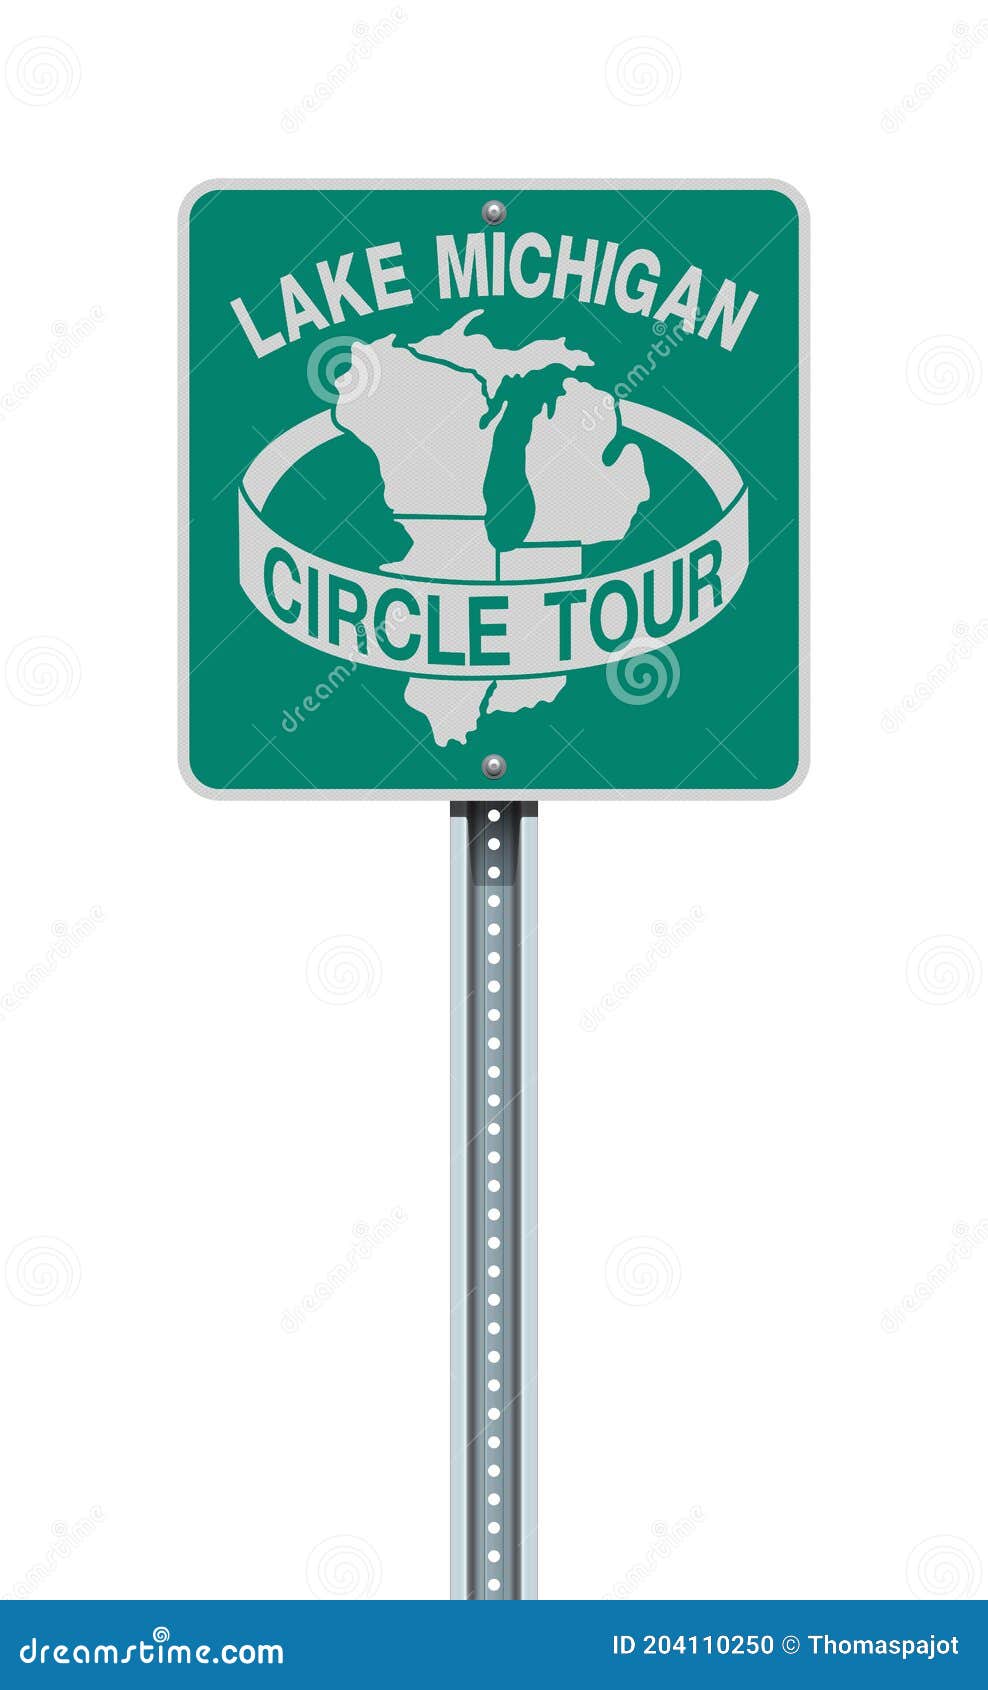 lake michigan circle tour sign